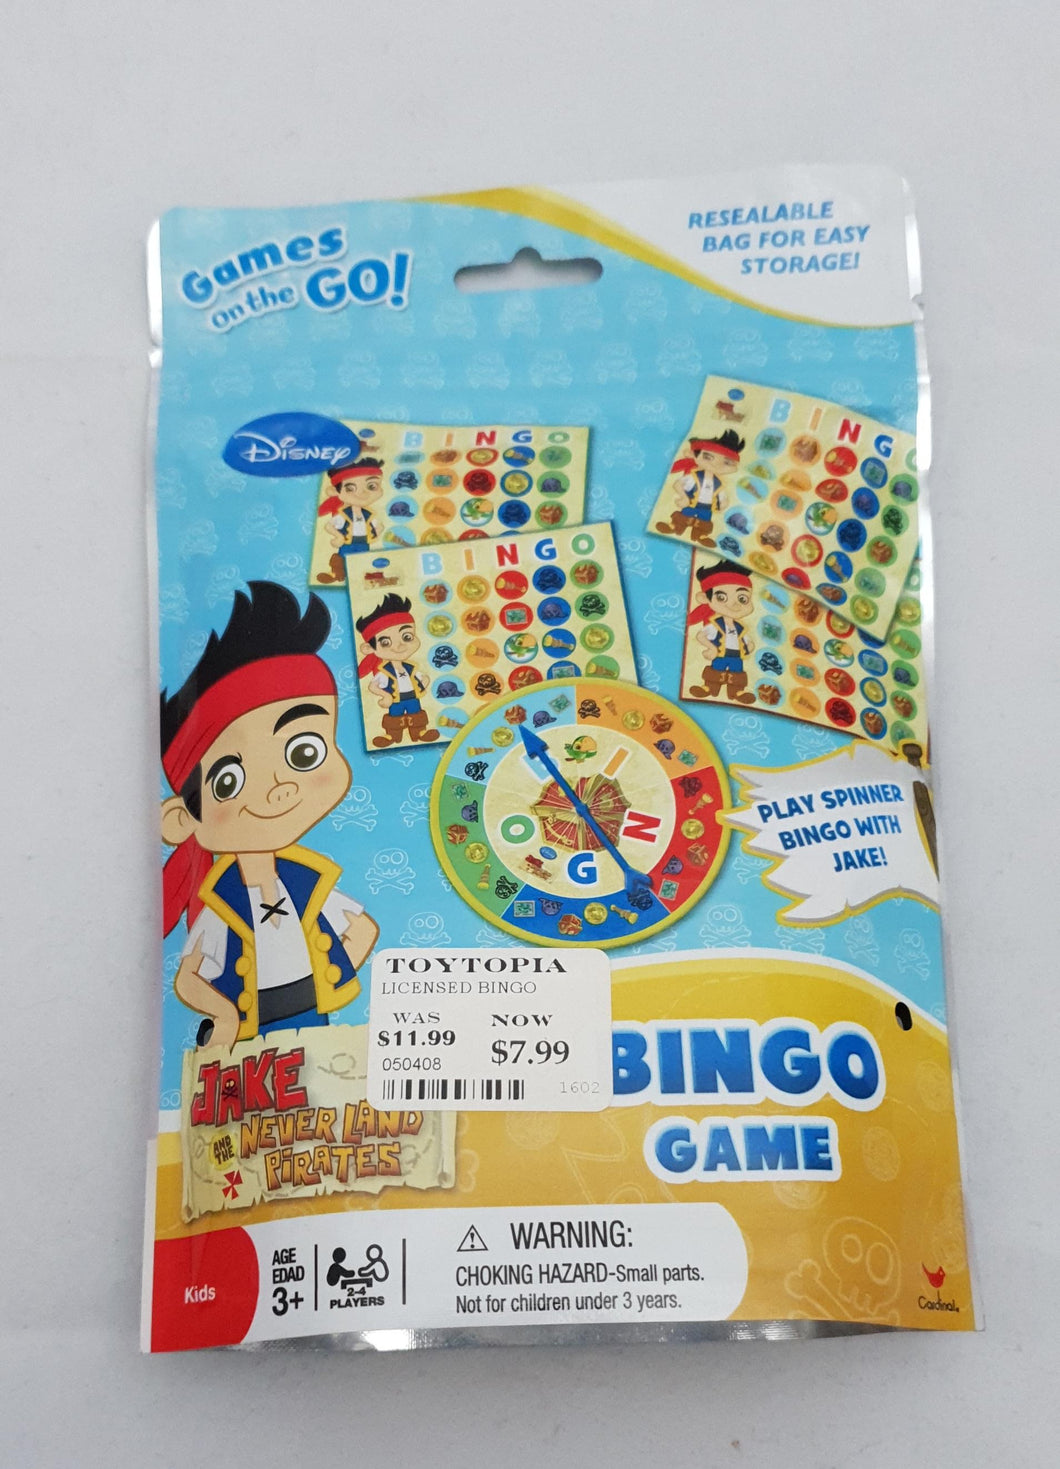 Jake the Pirate Bingo game